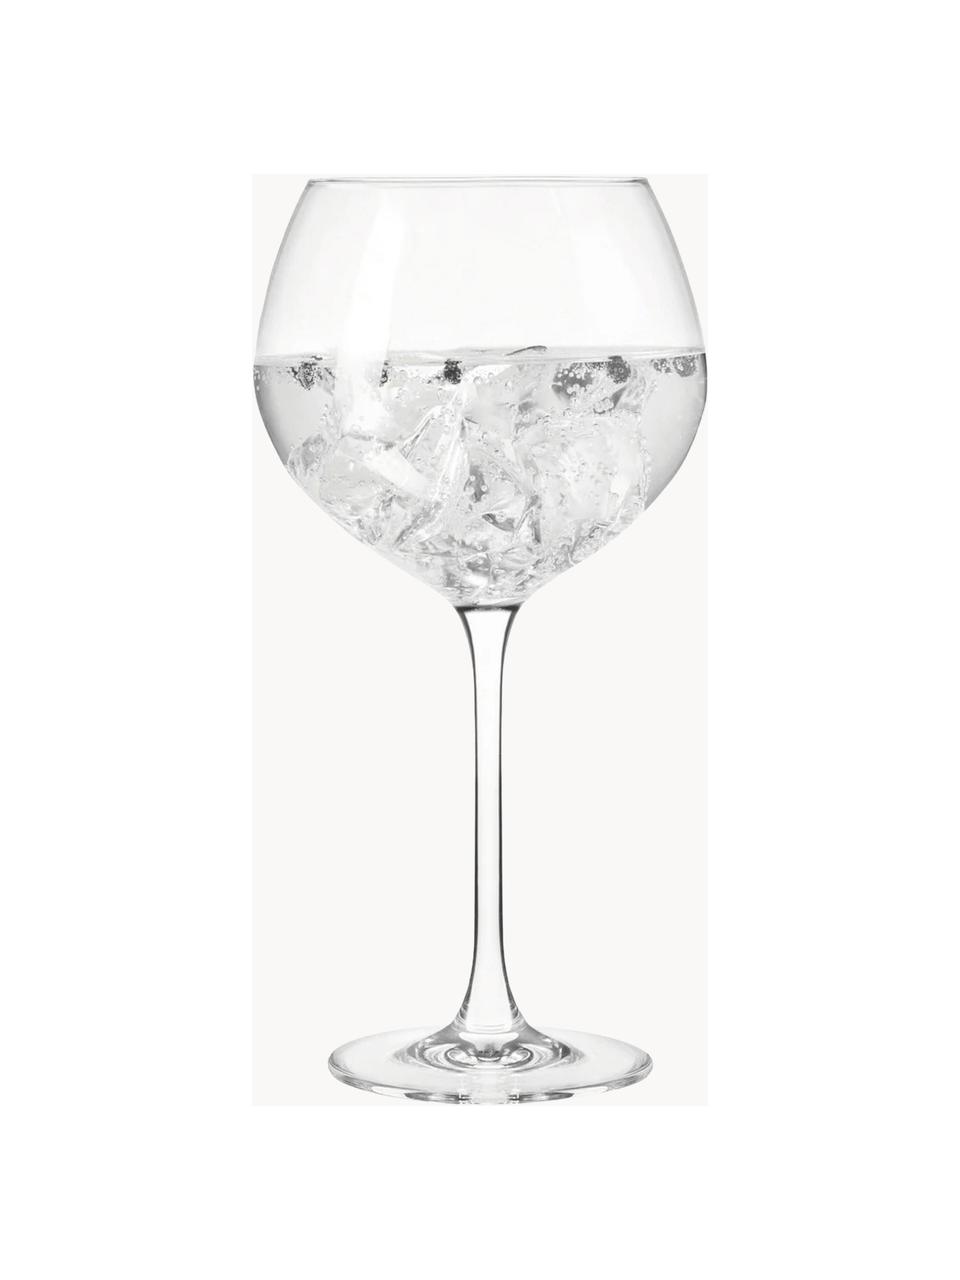 Bicchiere da gin in cristallo Gin, Cristallo, Trasparente, Ø 11 x Alt. 22 cm, 630 ml